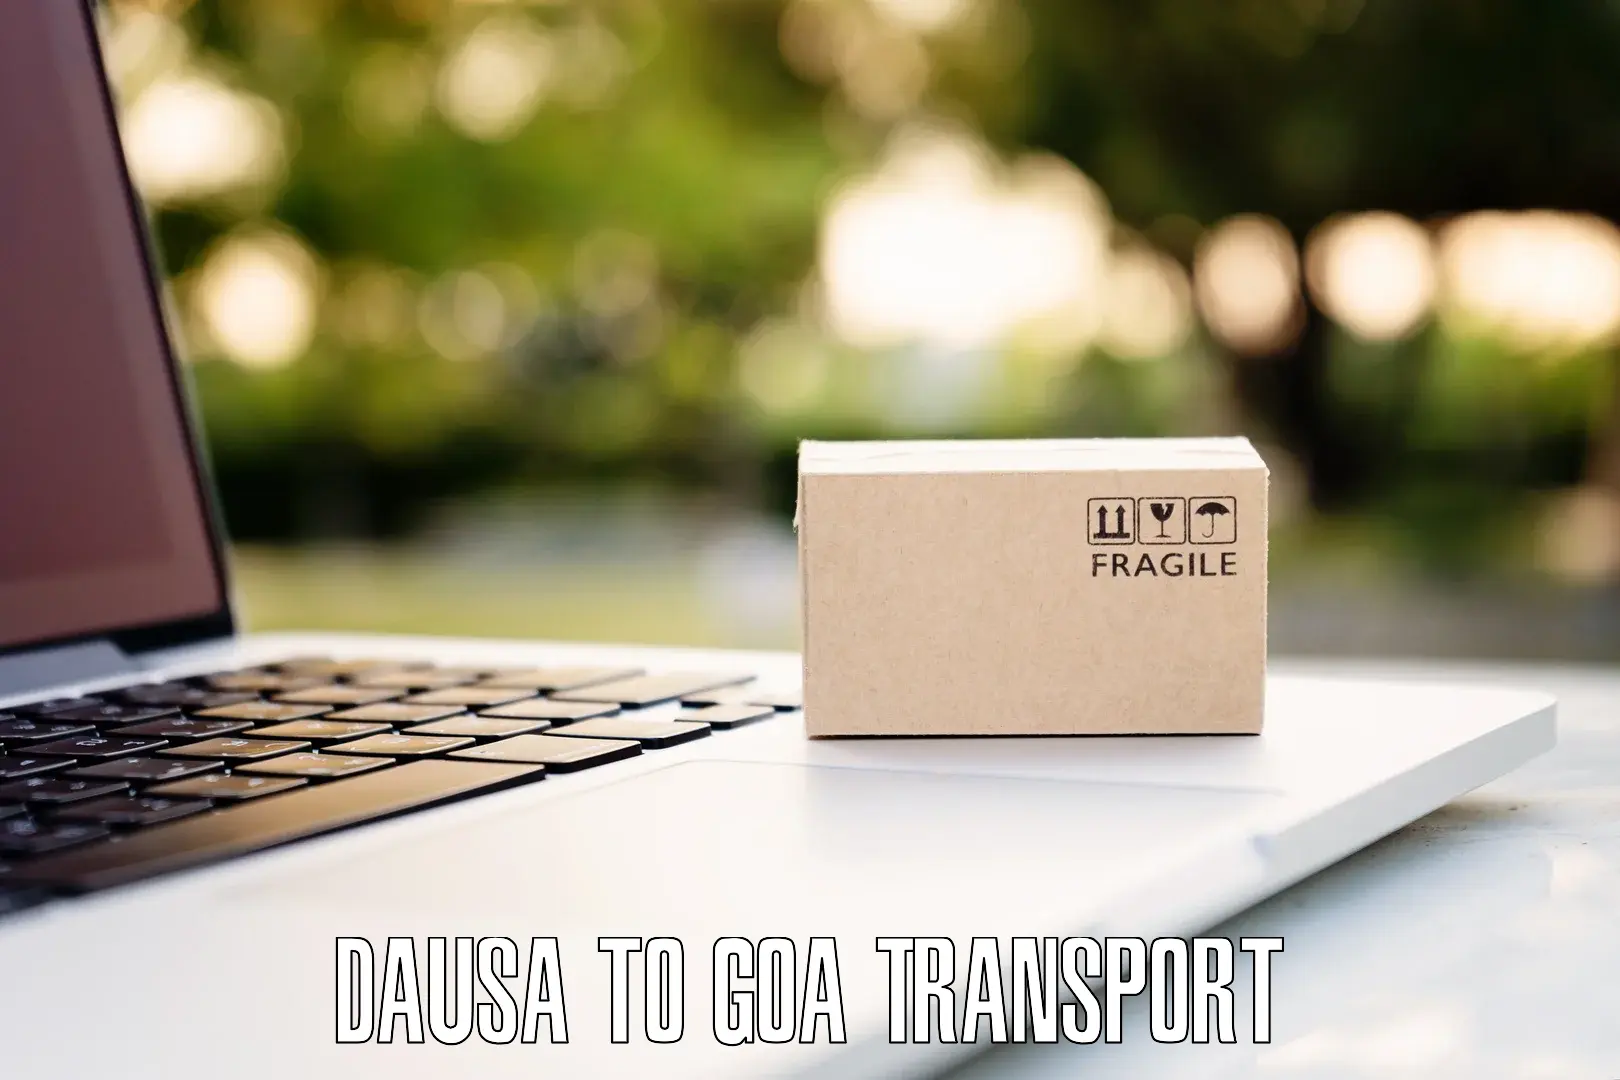 Online transport booking Dausa to Bicholim